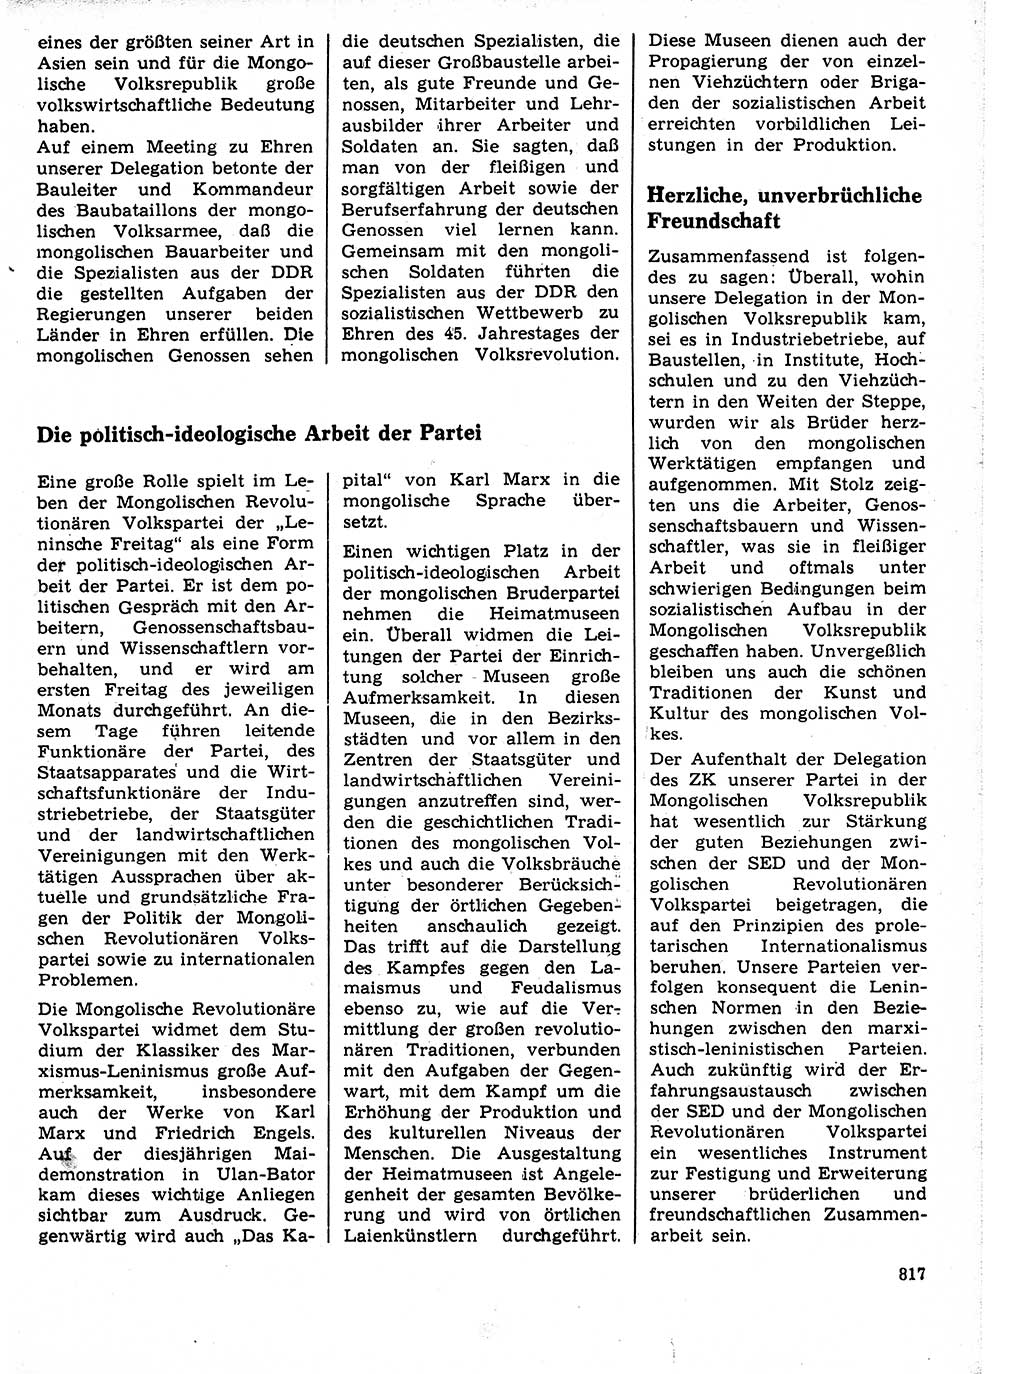 Neuer Weg (NW), Organ des Zentralkomitees (ZK) der SED (Sozialistische Einheitspartei Deutschlands) für Fragen des Parteilebens, 21. Jahrgang [Deutsche Demokratische Republik (DDR)] 1966, Seite 817 (NW ZK SED DDR 1966, S. 817)